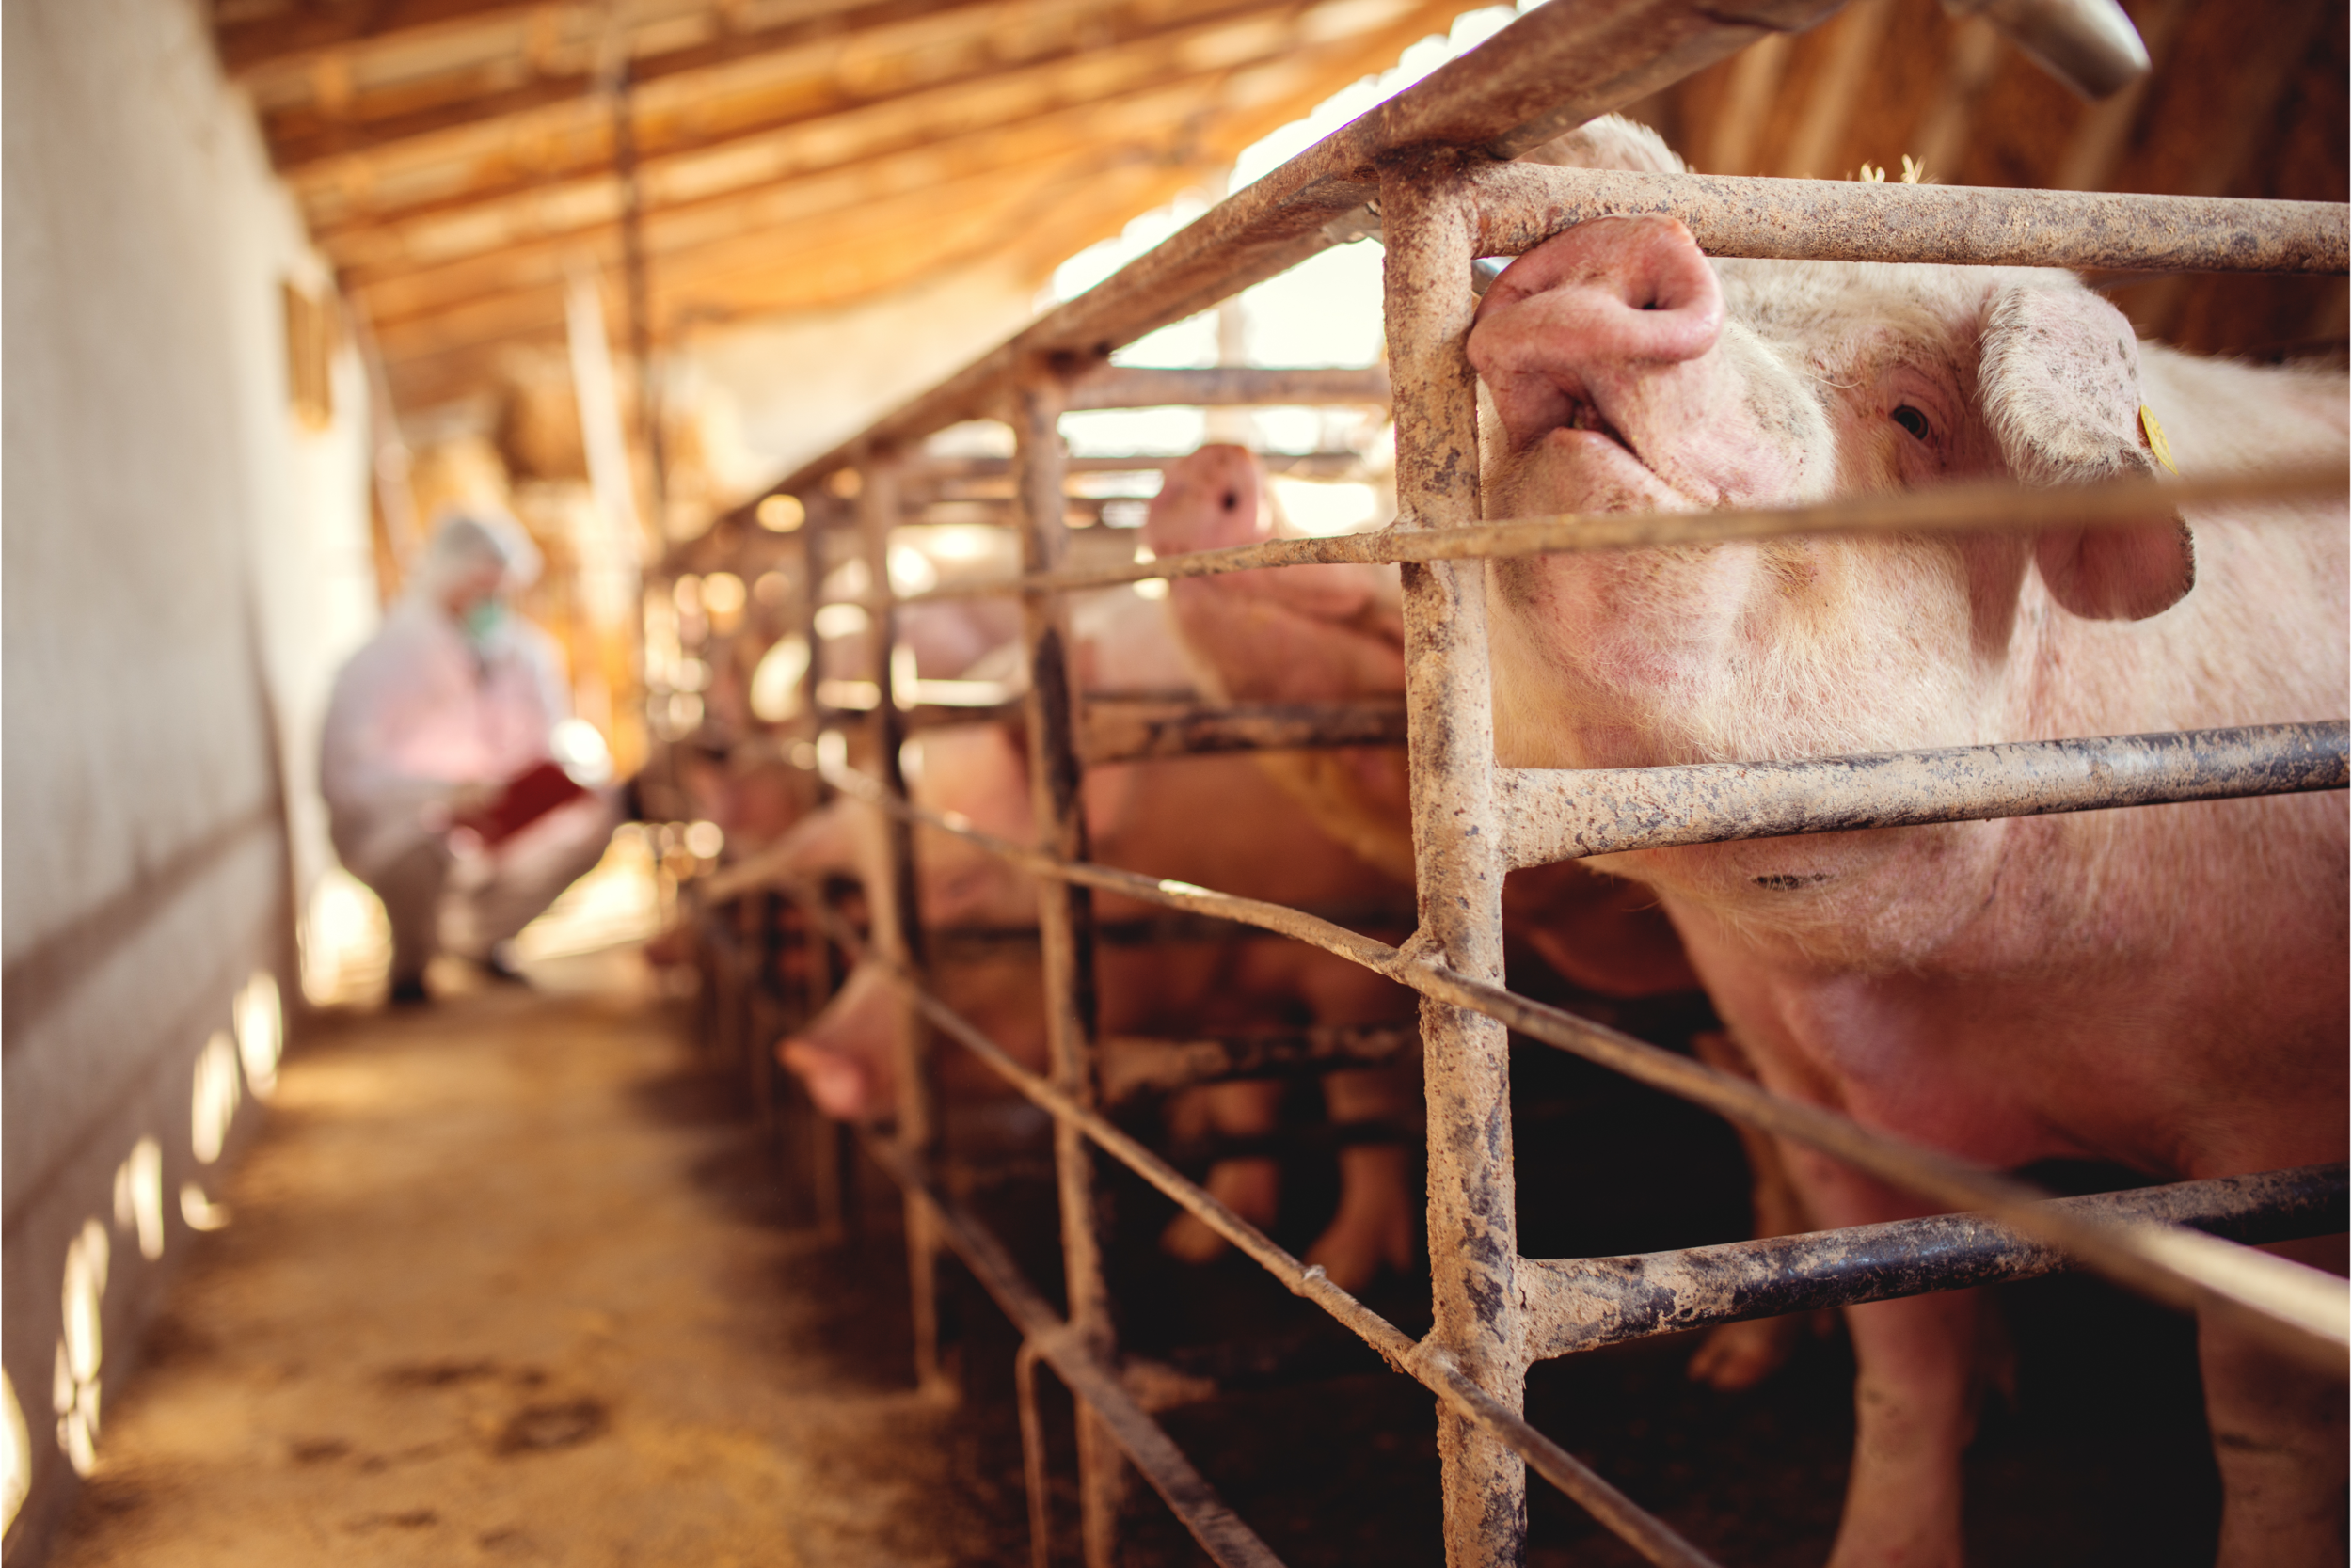 Disease concerns keep North American pig producers on alert